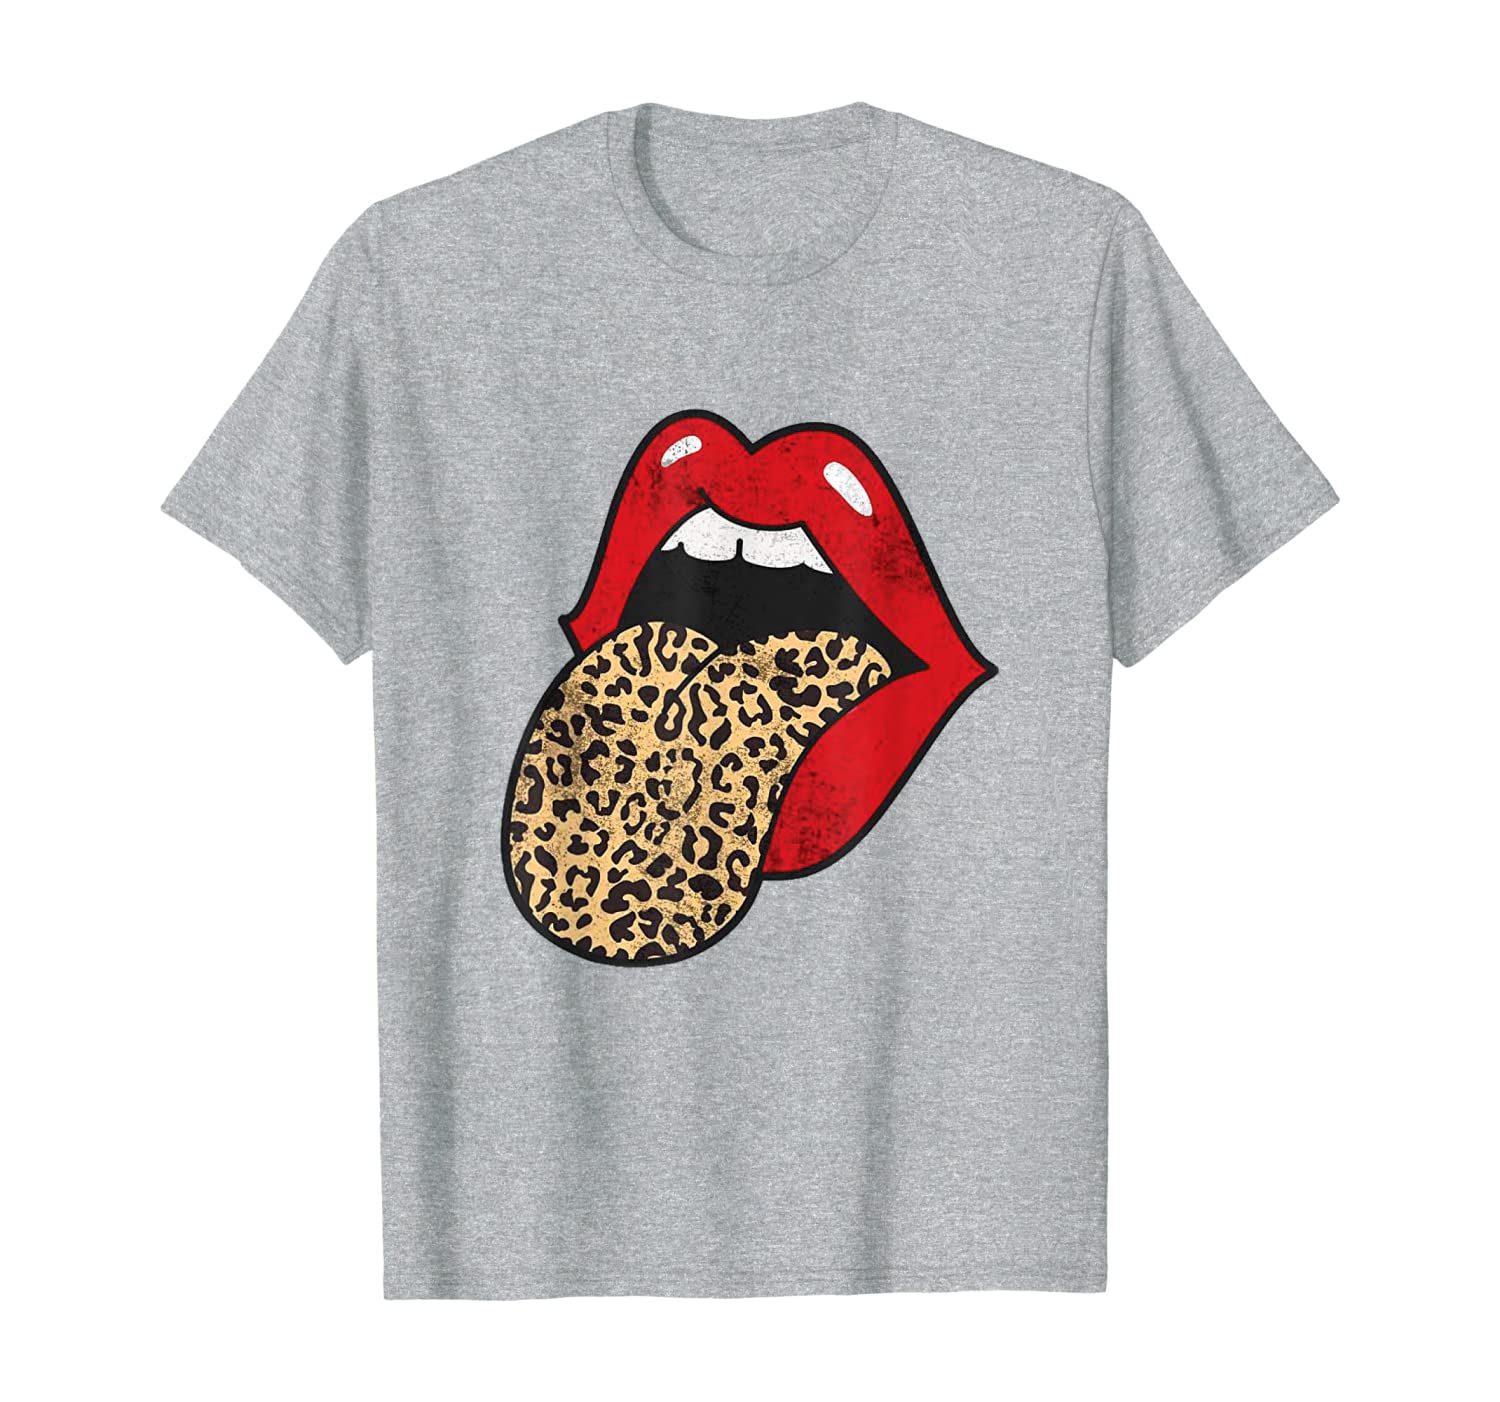 red lips with cheetah tongue shirt